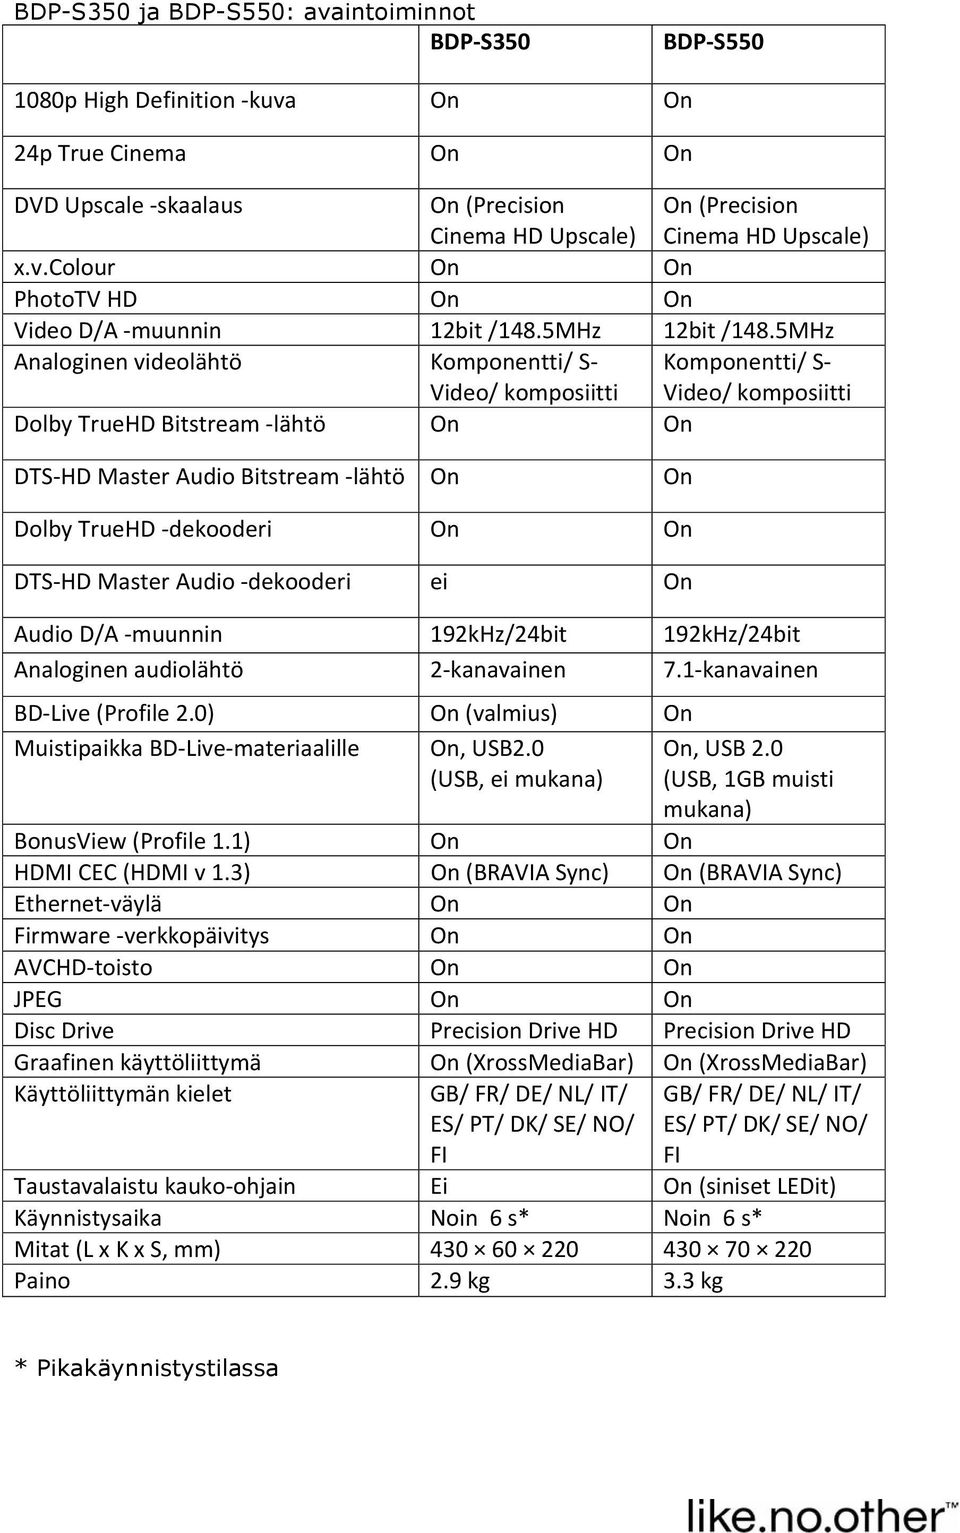 5MHz Analoginen videolähtö Komponentti/ S Video/ komposiitti Komponentti/ S Video/ komposiitti Dolby TrueHD Bitstream lähtö On On DTS HD Master Audio Bitstream lähtö On On Dolby TrueHD dekooderi On